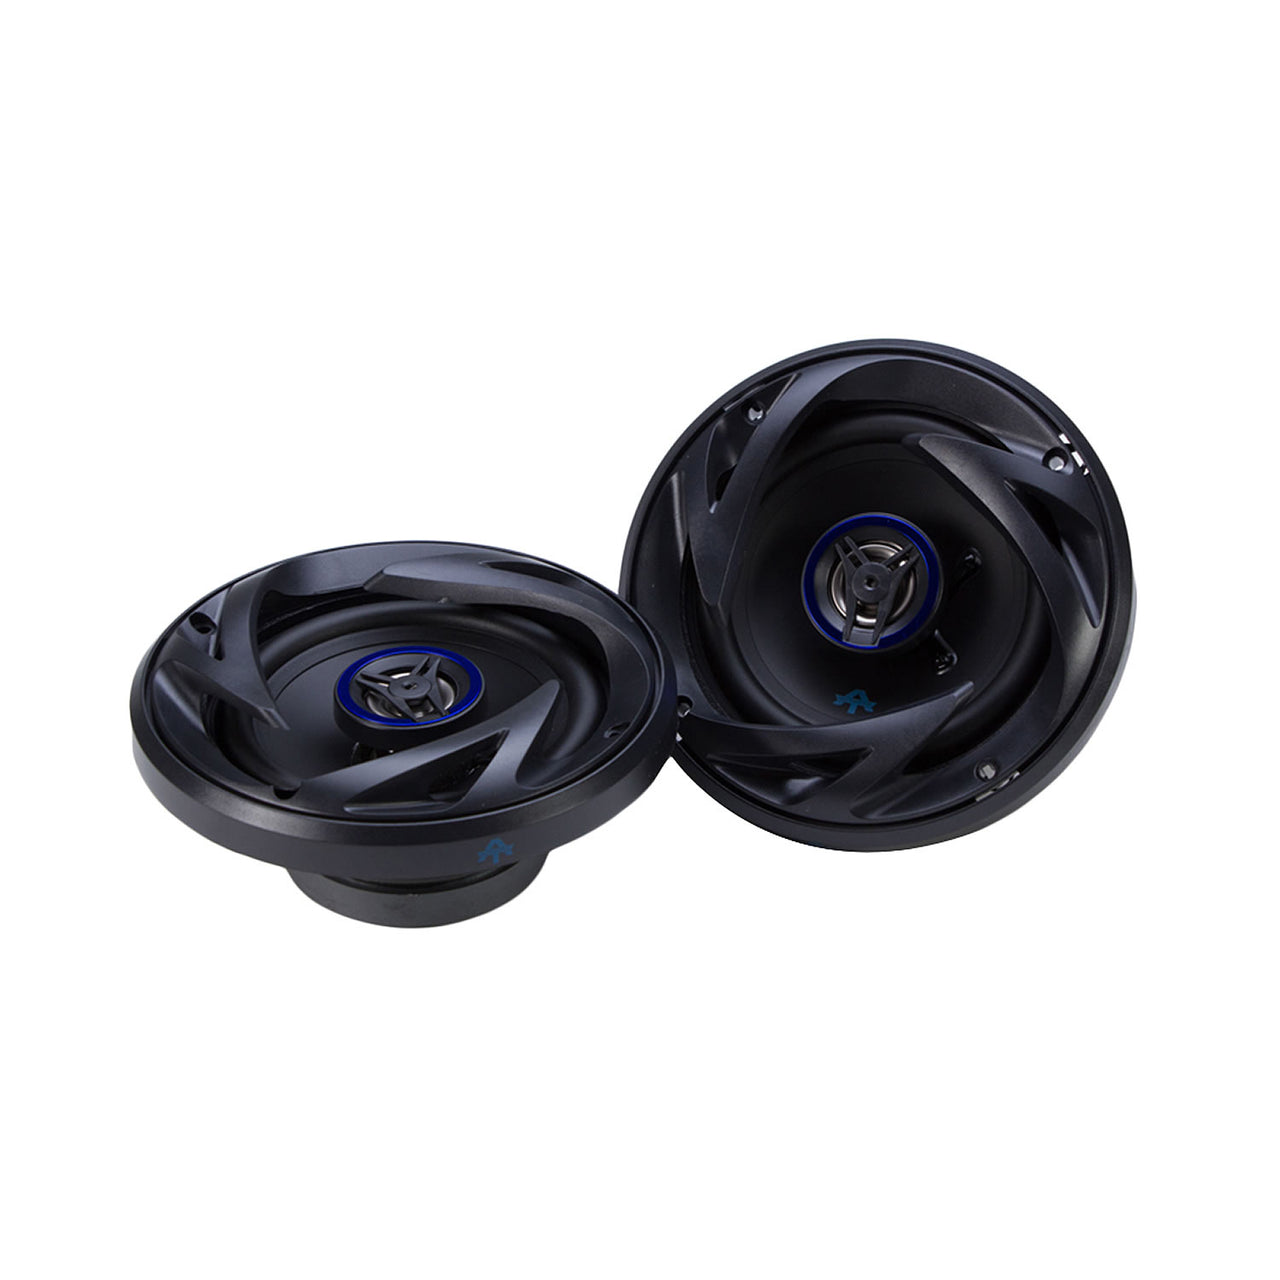 AUTOTEK ATS525CX 250W 5-1/4" 2-Way ATS Series Coaxial Car Speakers